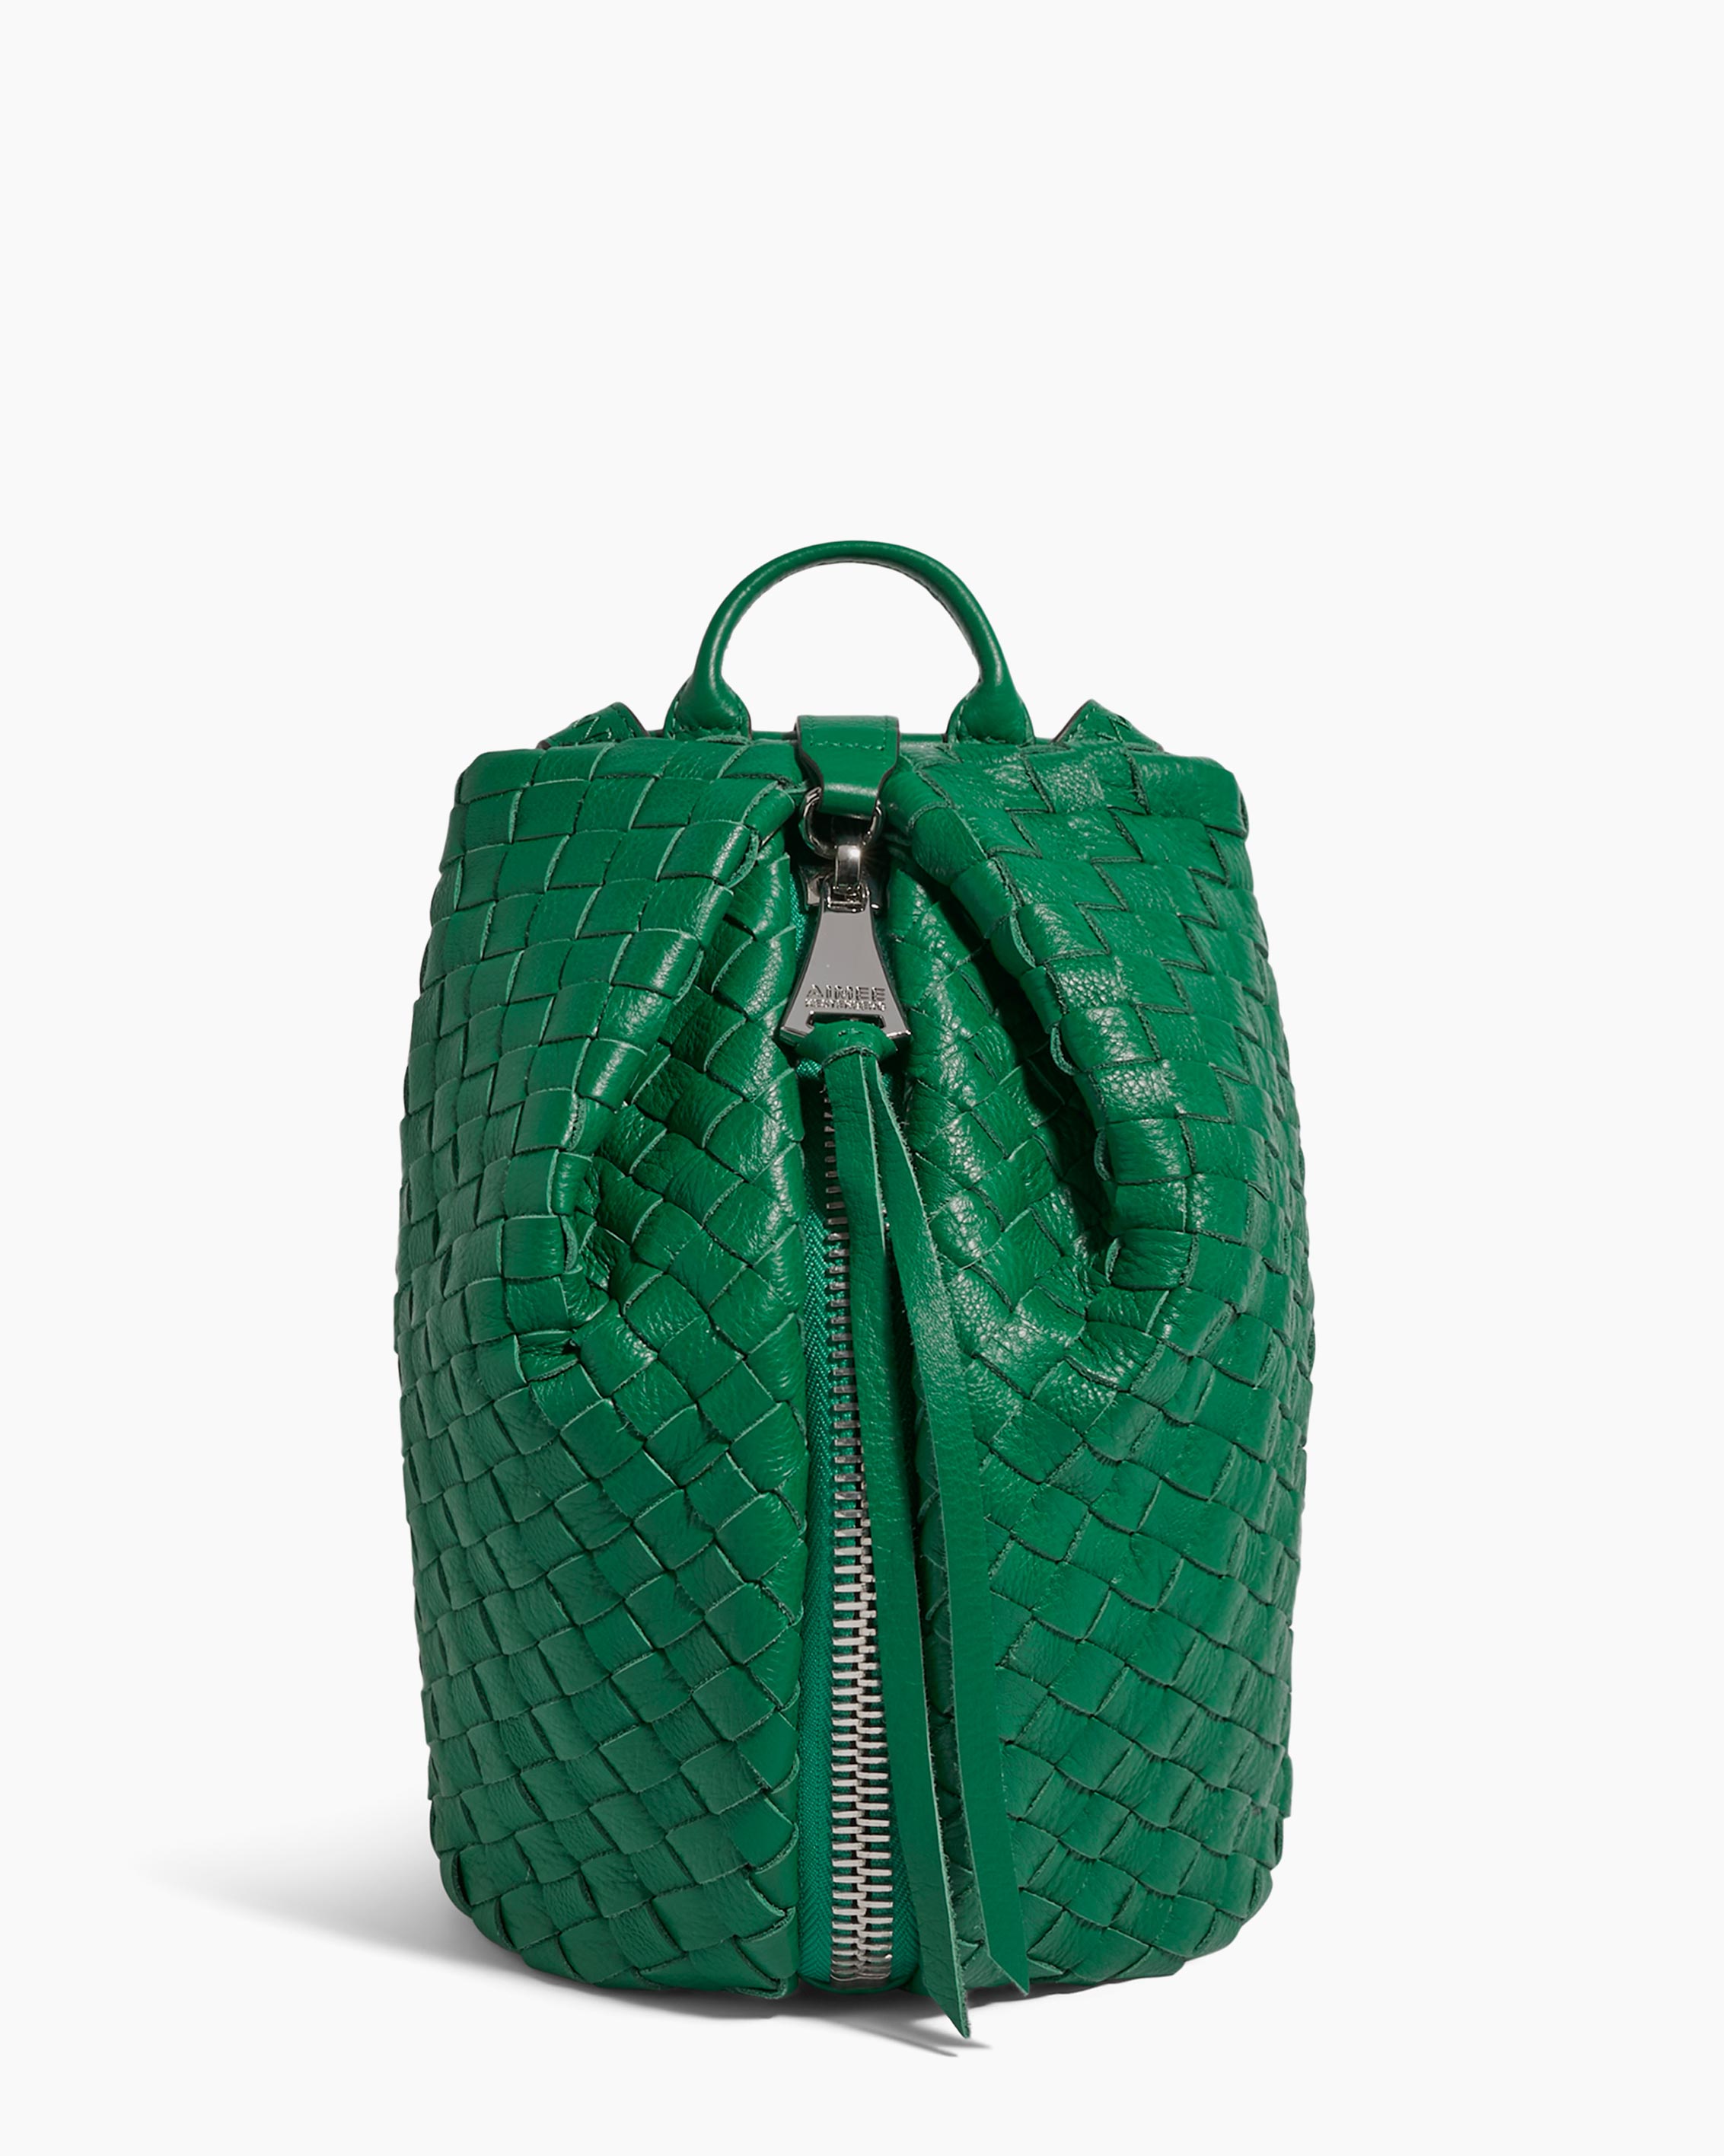 Favorite Kelly-esque bag? : r/handbags